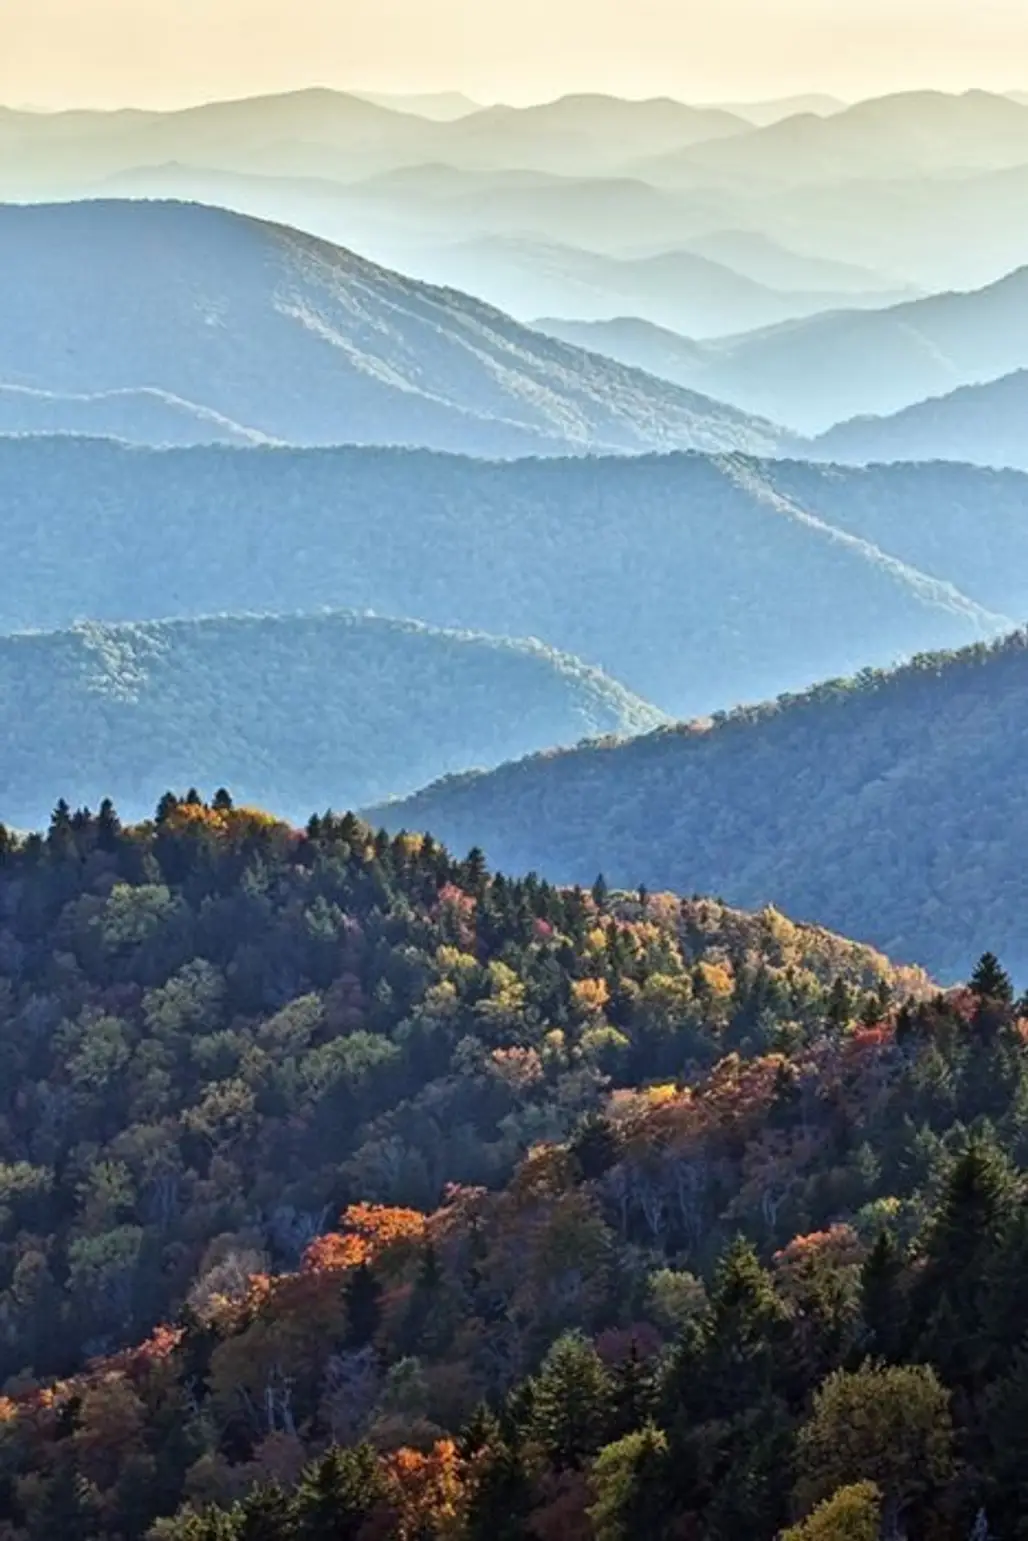 Blue Ridge Mountains, USA